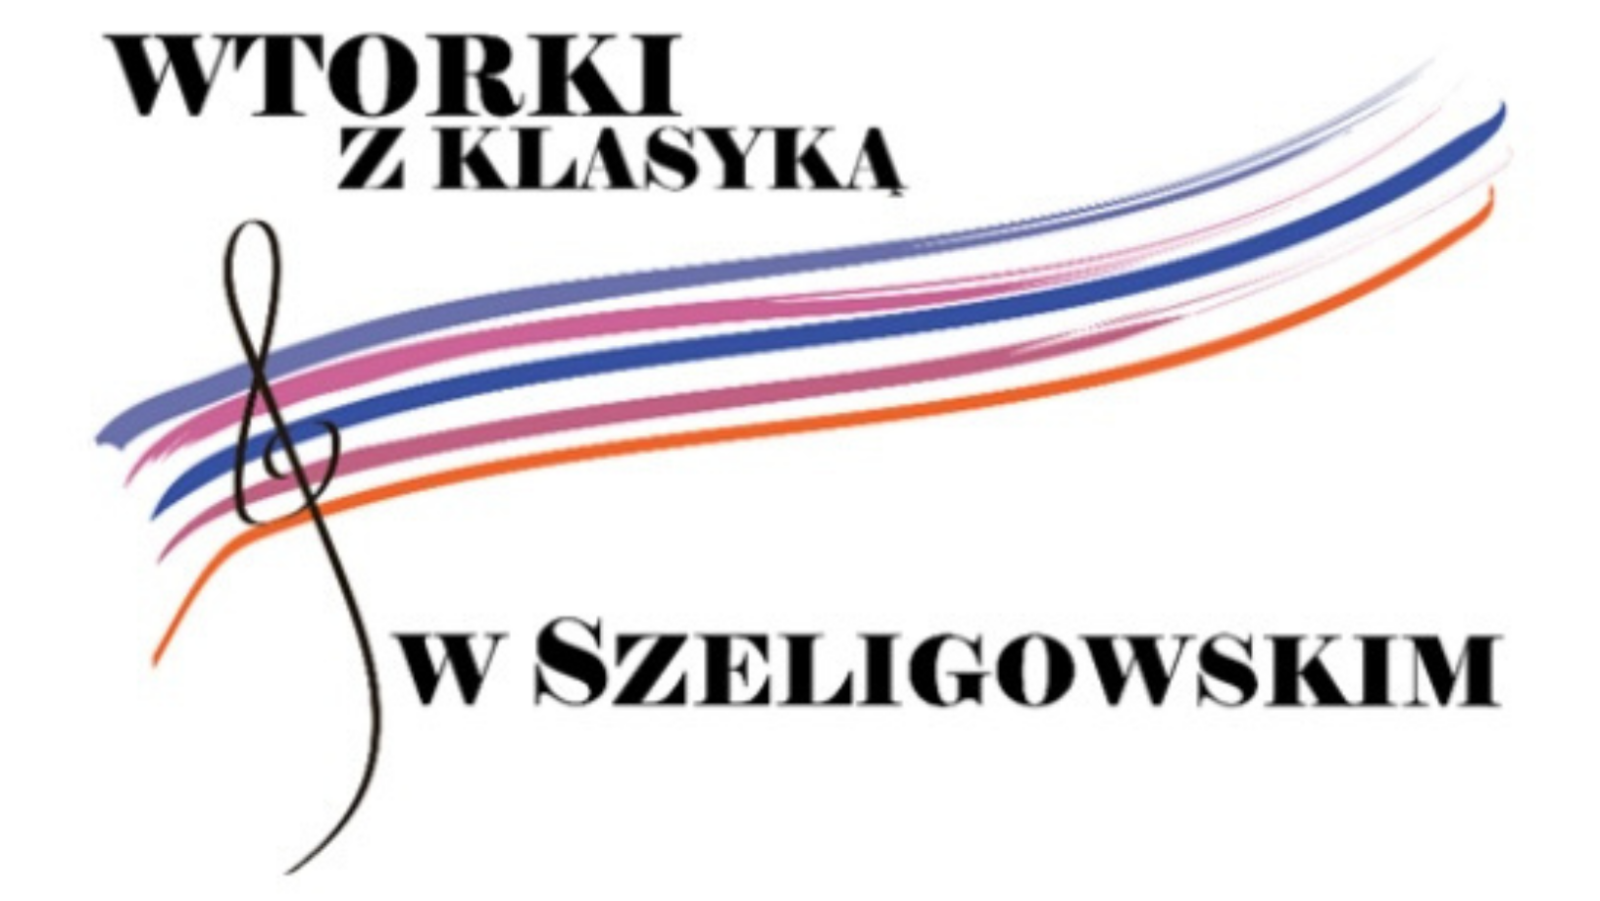 logo projektu: Wtorki z klasyką w Szeligowskim